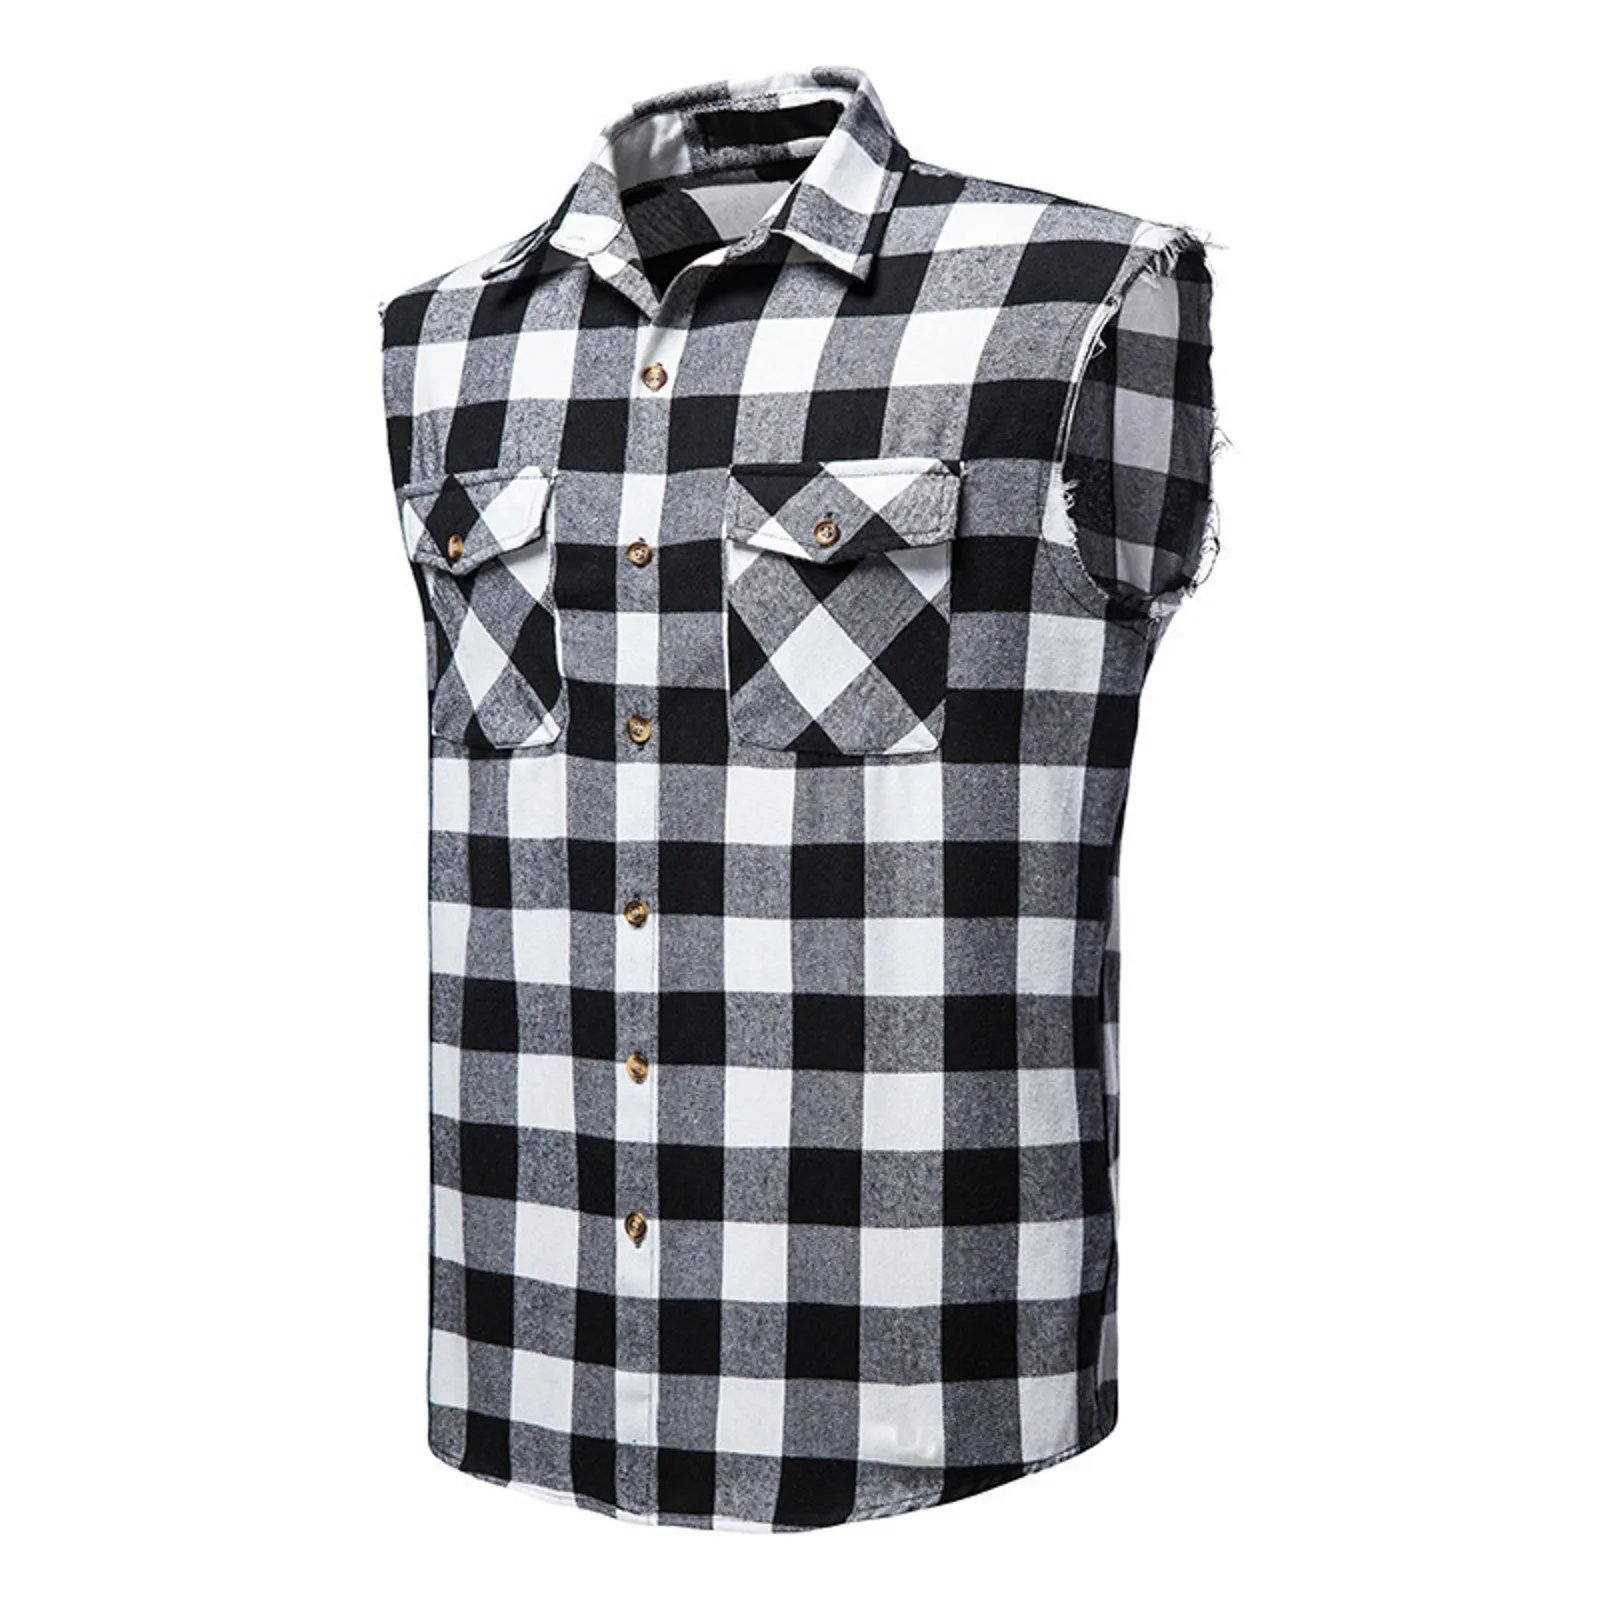 54# Men's Casual Flannel Plaid Shirt Sleeveless Double Pocket Cowboy Button Down Shirts Men Cotton Plus Size Vest Checkered Top